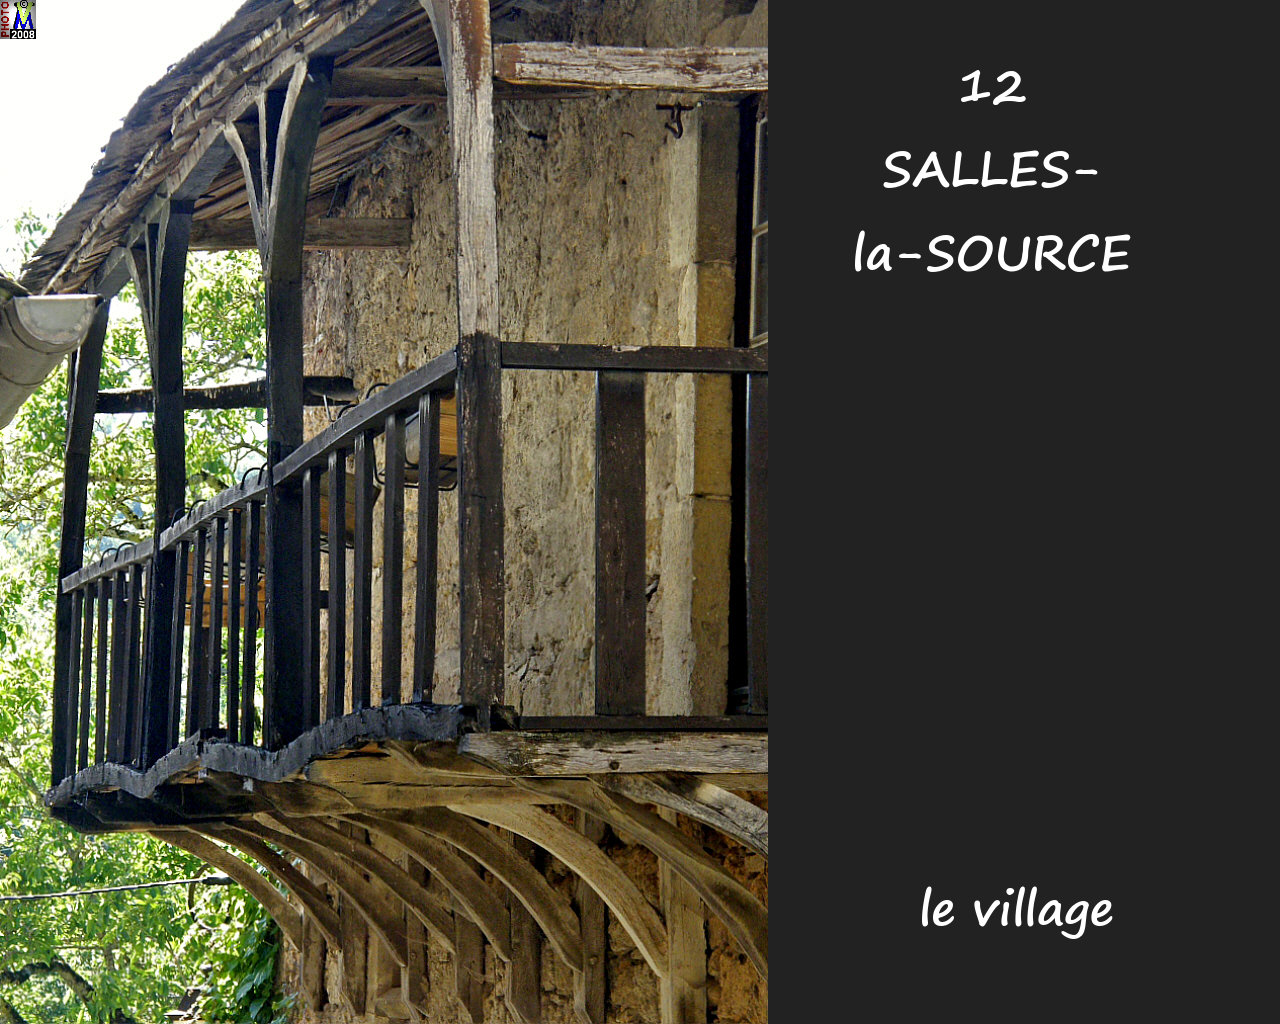 12SALLES-SOURCE_village_124.jpg